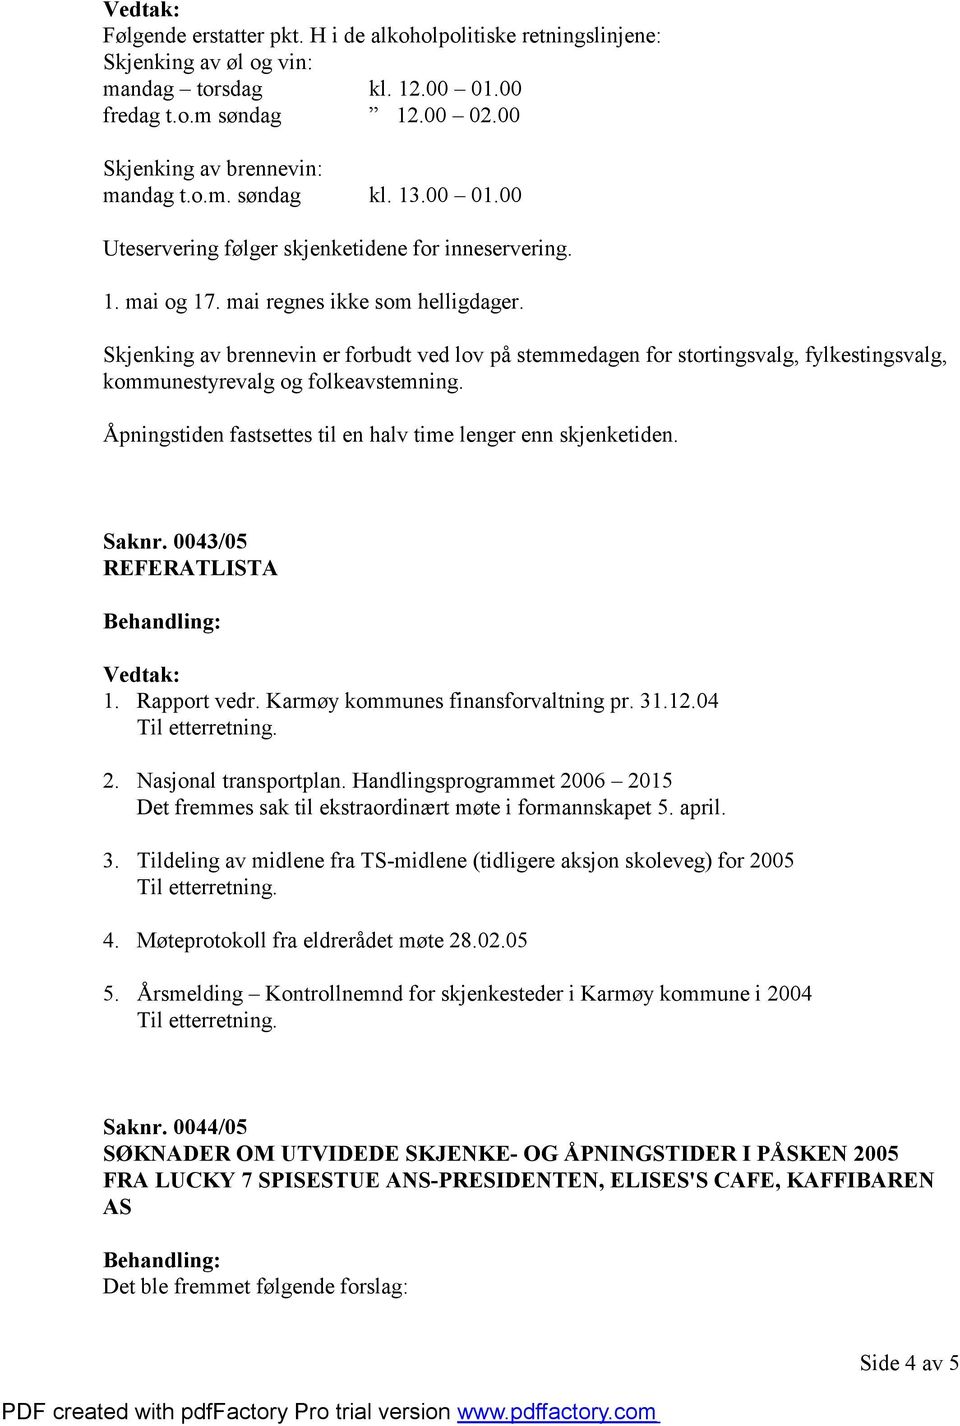 Saknr. 0043/05 REFERATLISTA 1. Rapport vedr. Karmøy kommunes finansforvaltning pr. 31.12.04 2. Nasjonal transportplan.